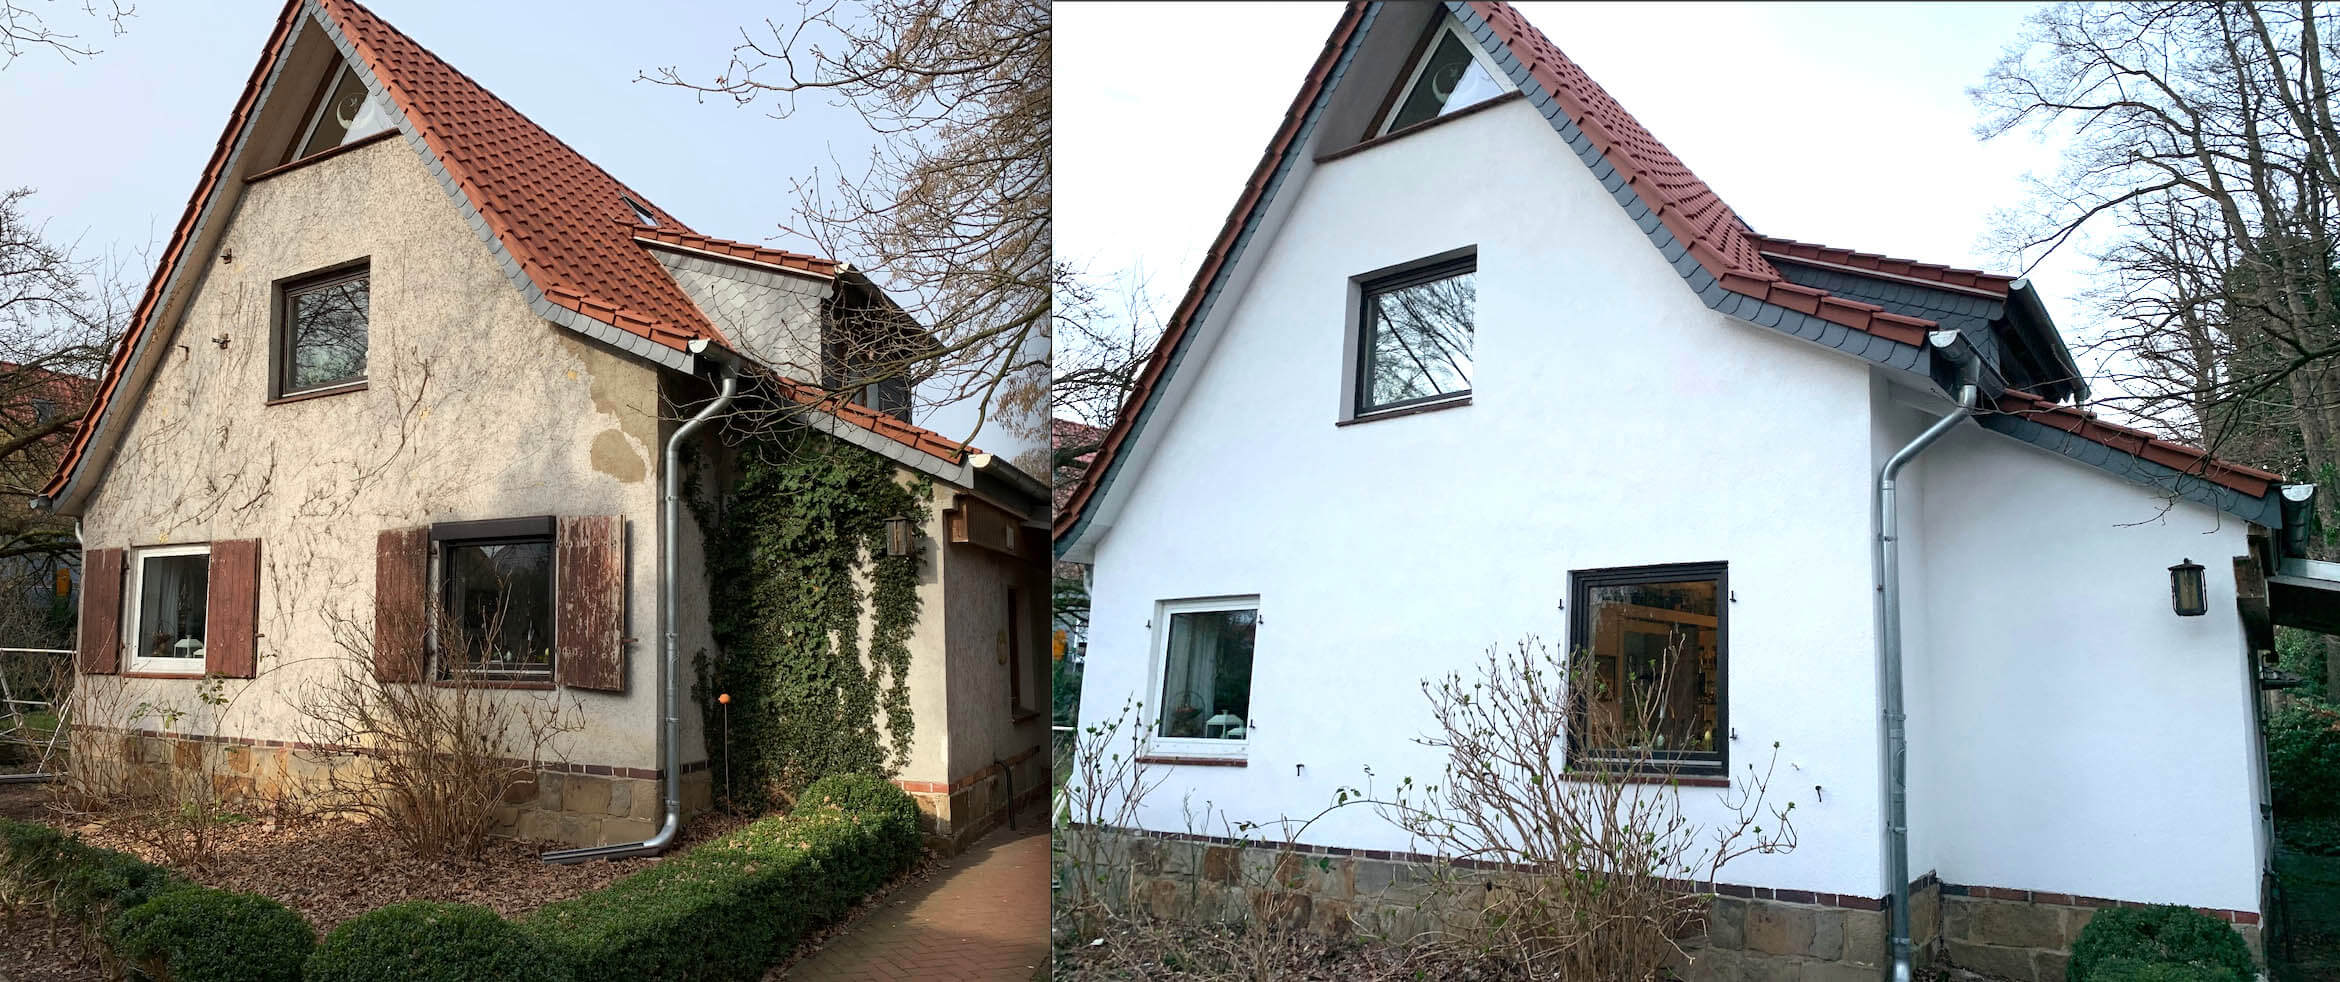 Malereibetrieb Hannover Fassade verputzen